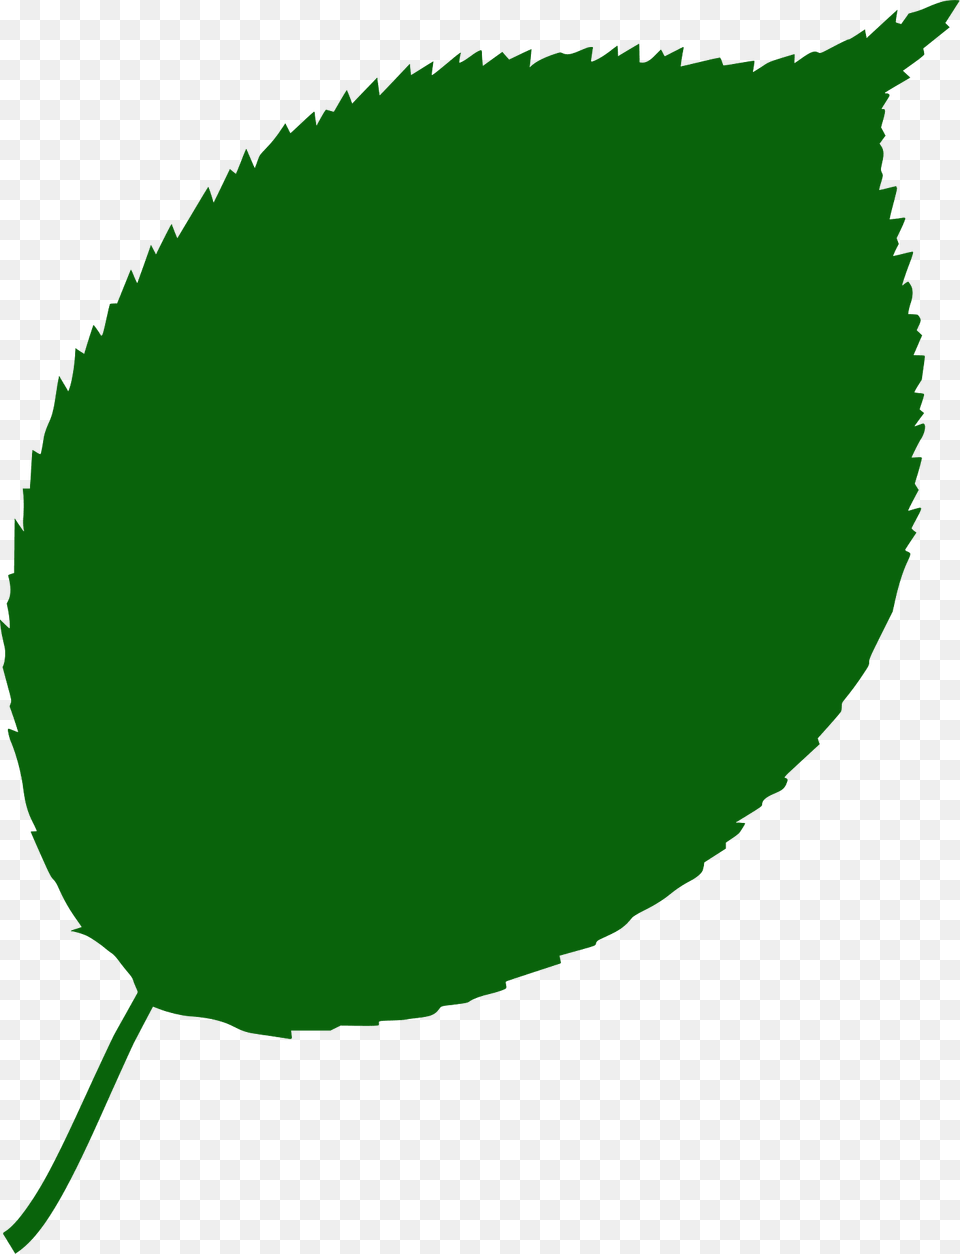 Apple Tree Leaf Silhouette, Green, Plant, Herbal, Herbs Png